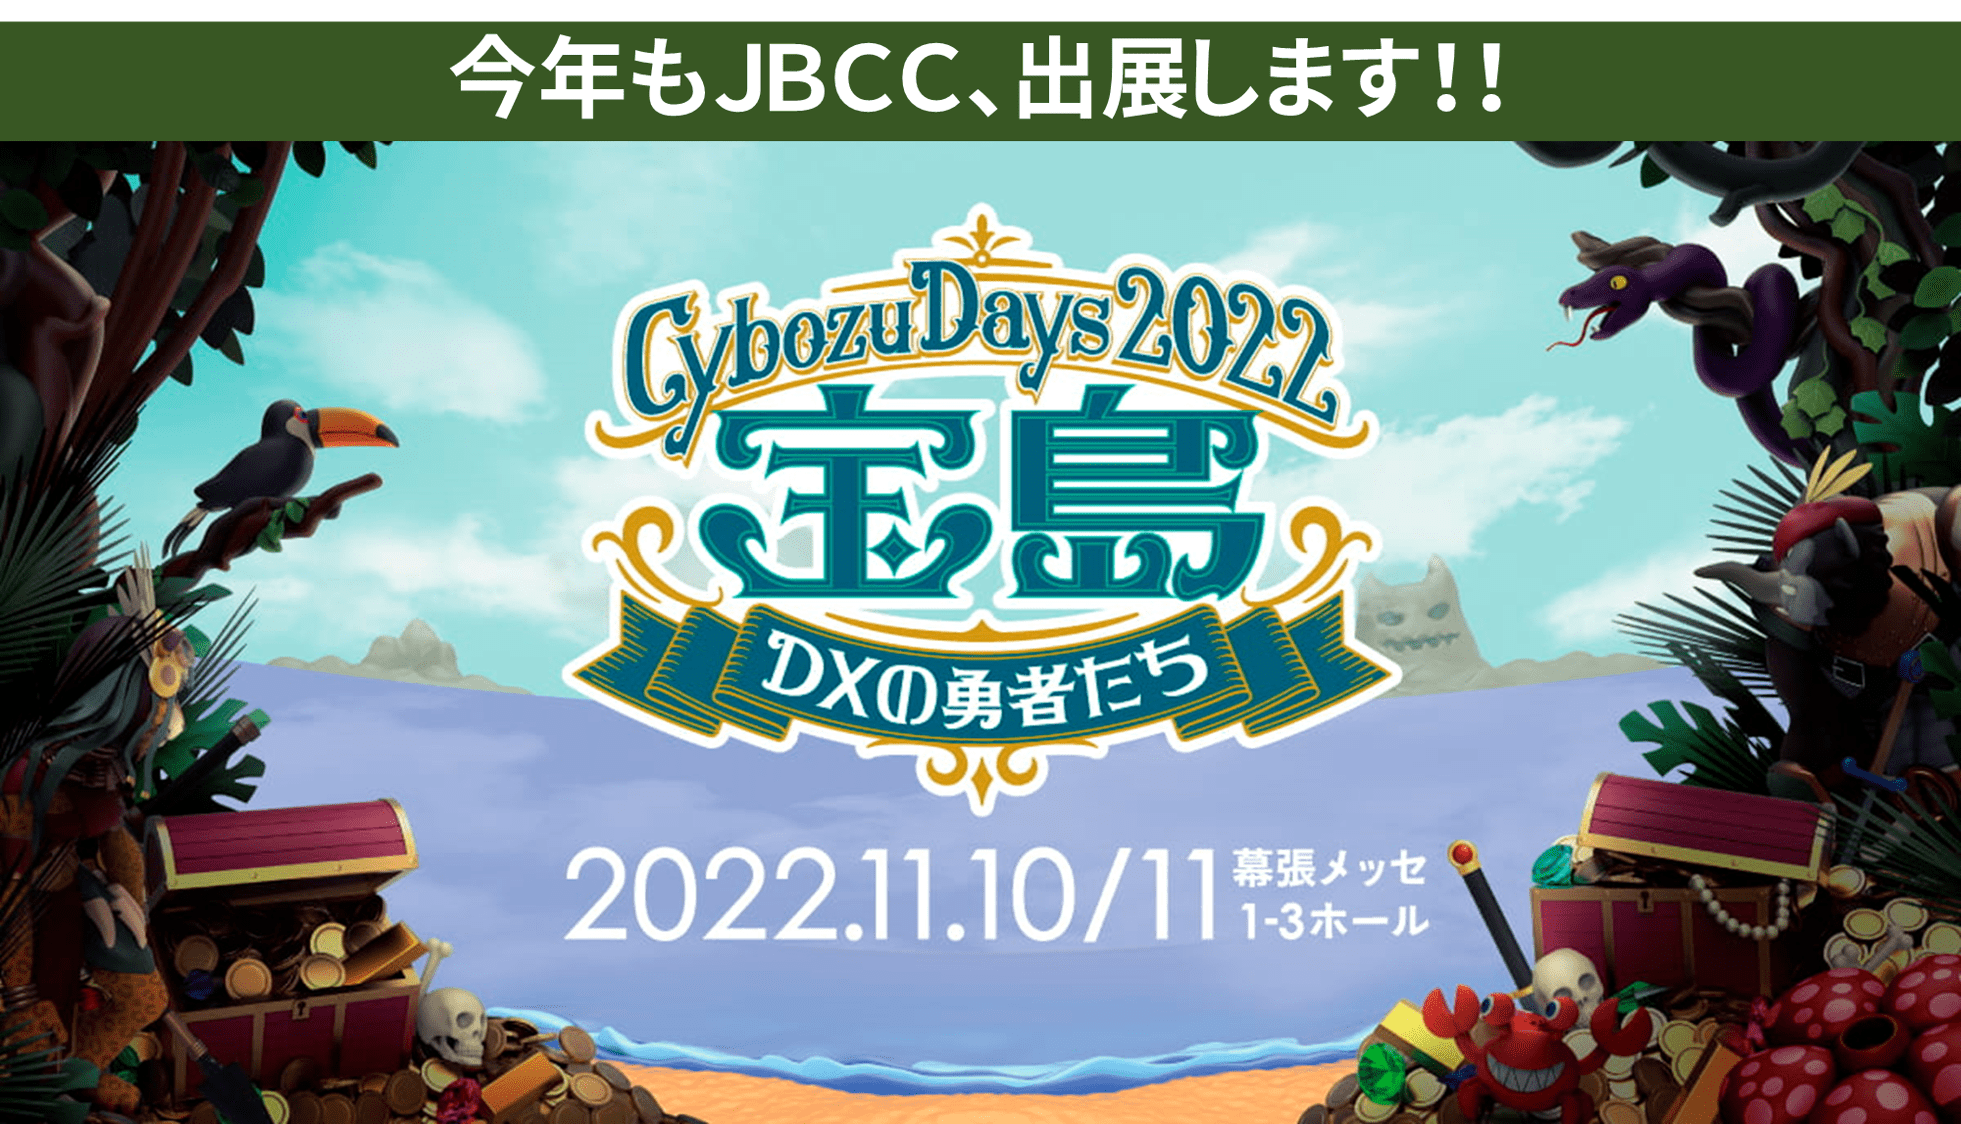 【Cybozu Days 2022 】ＪＢＣＣが出展します！（11/10-11）